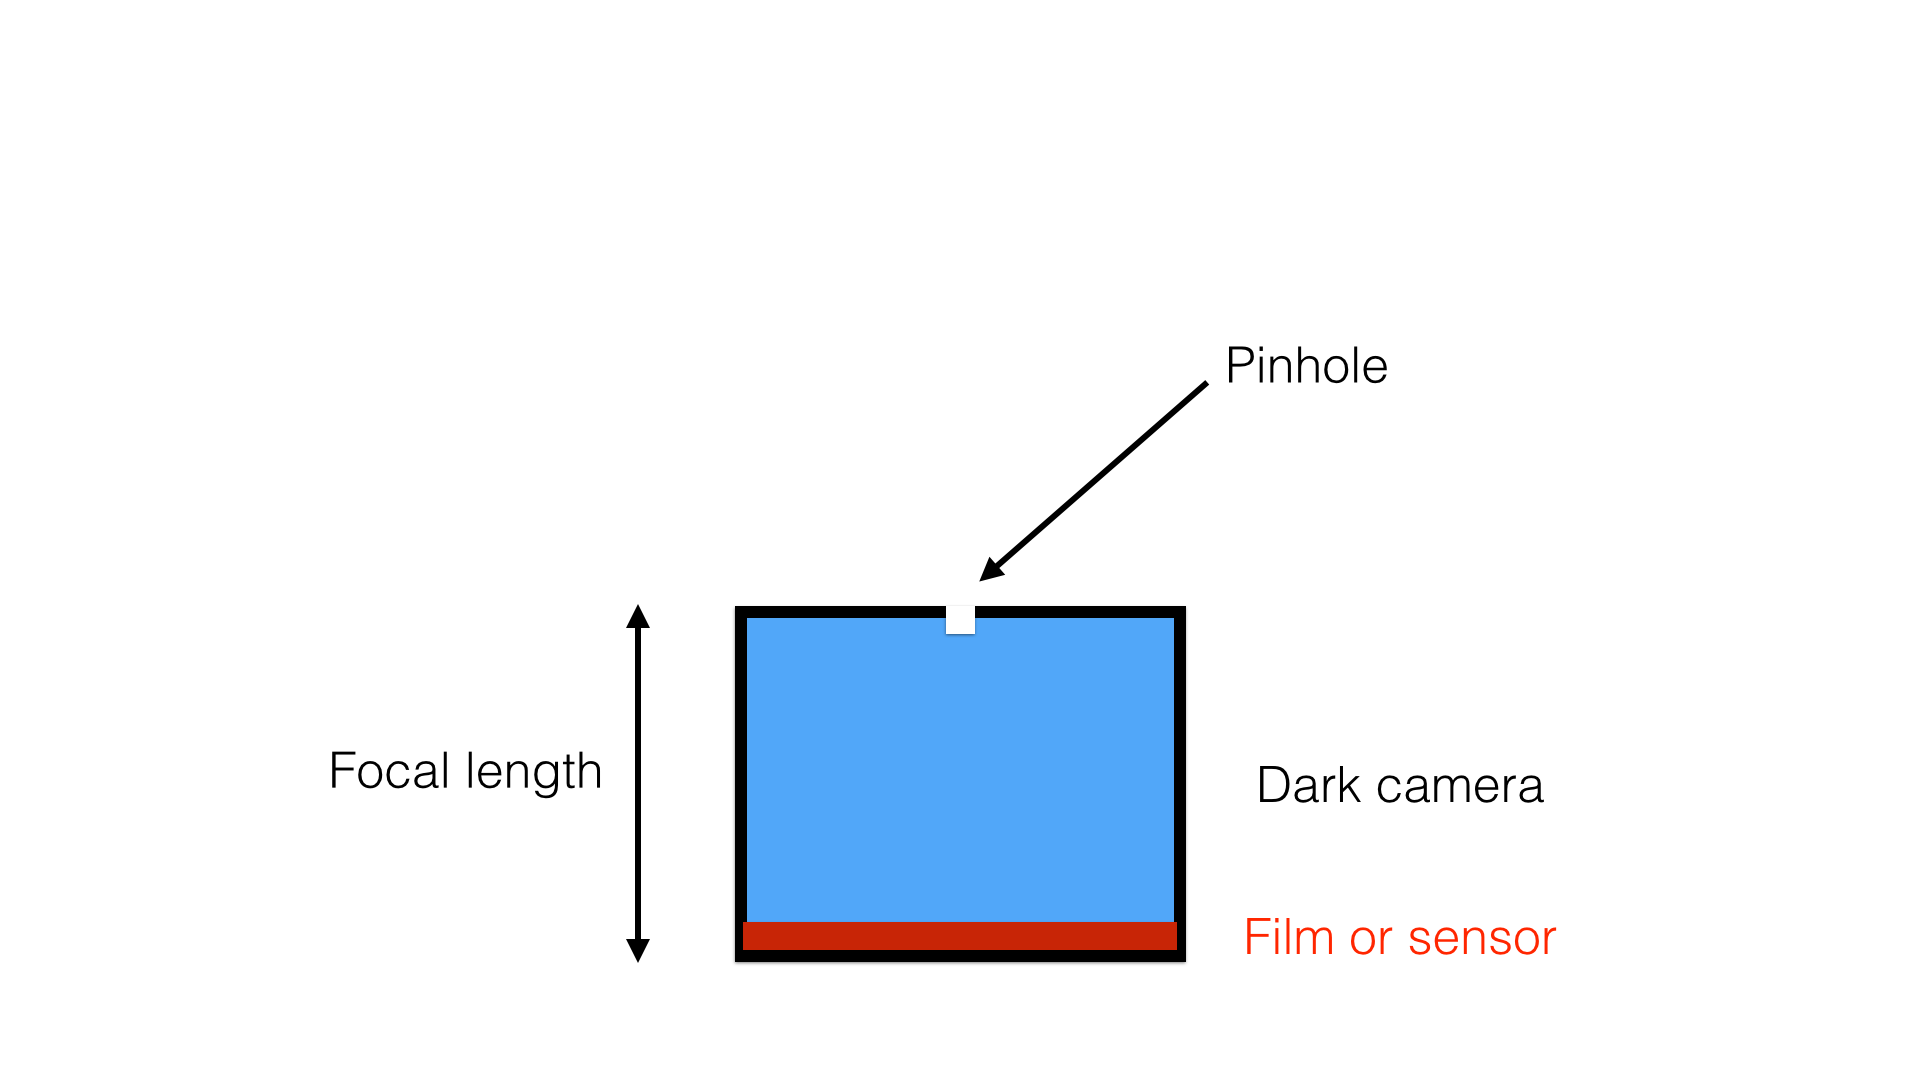 Figure 1: Pinhole camera